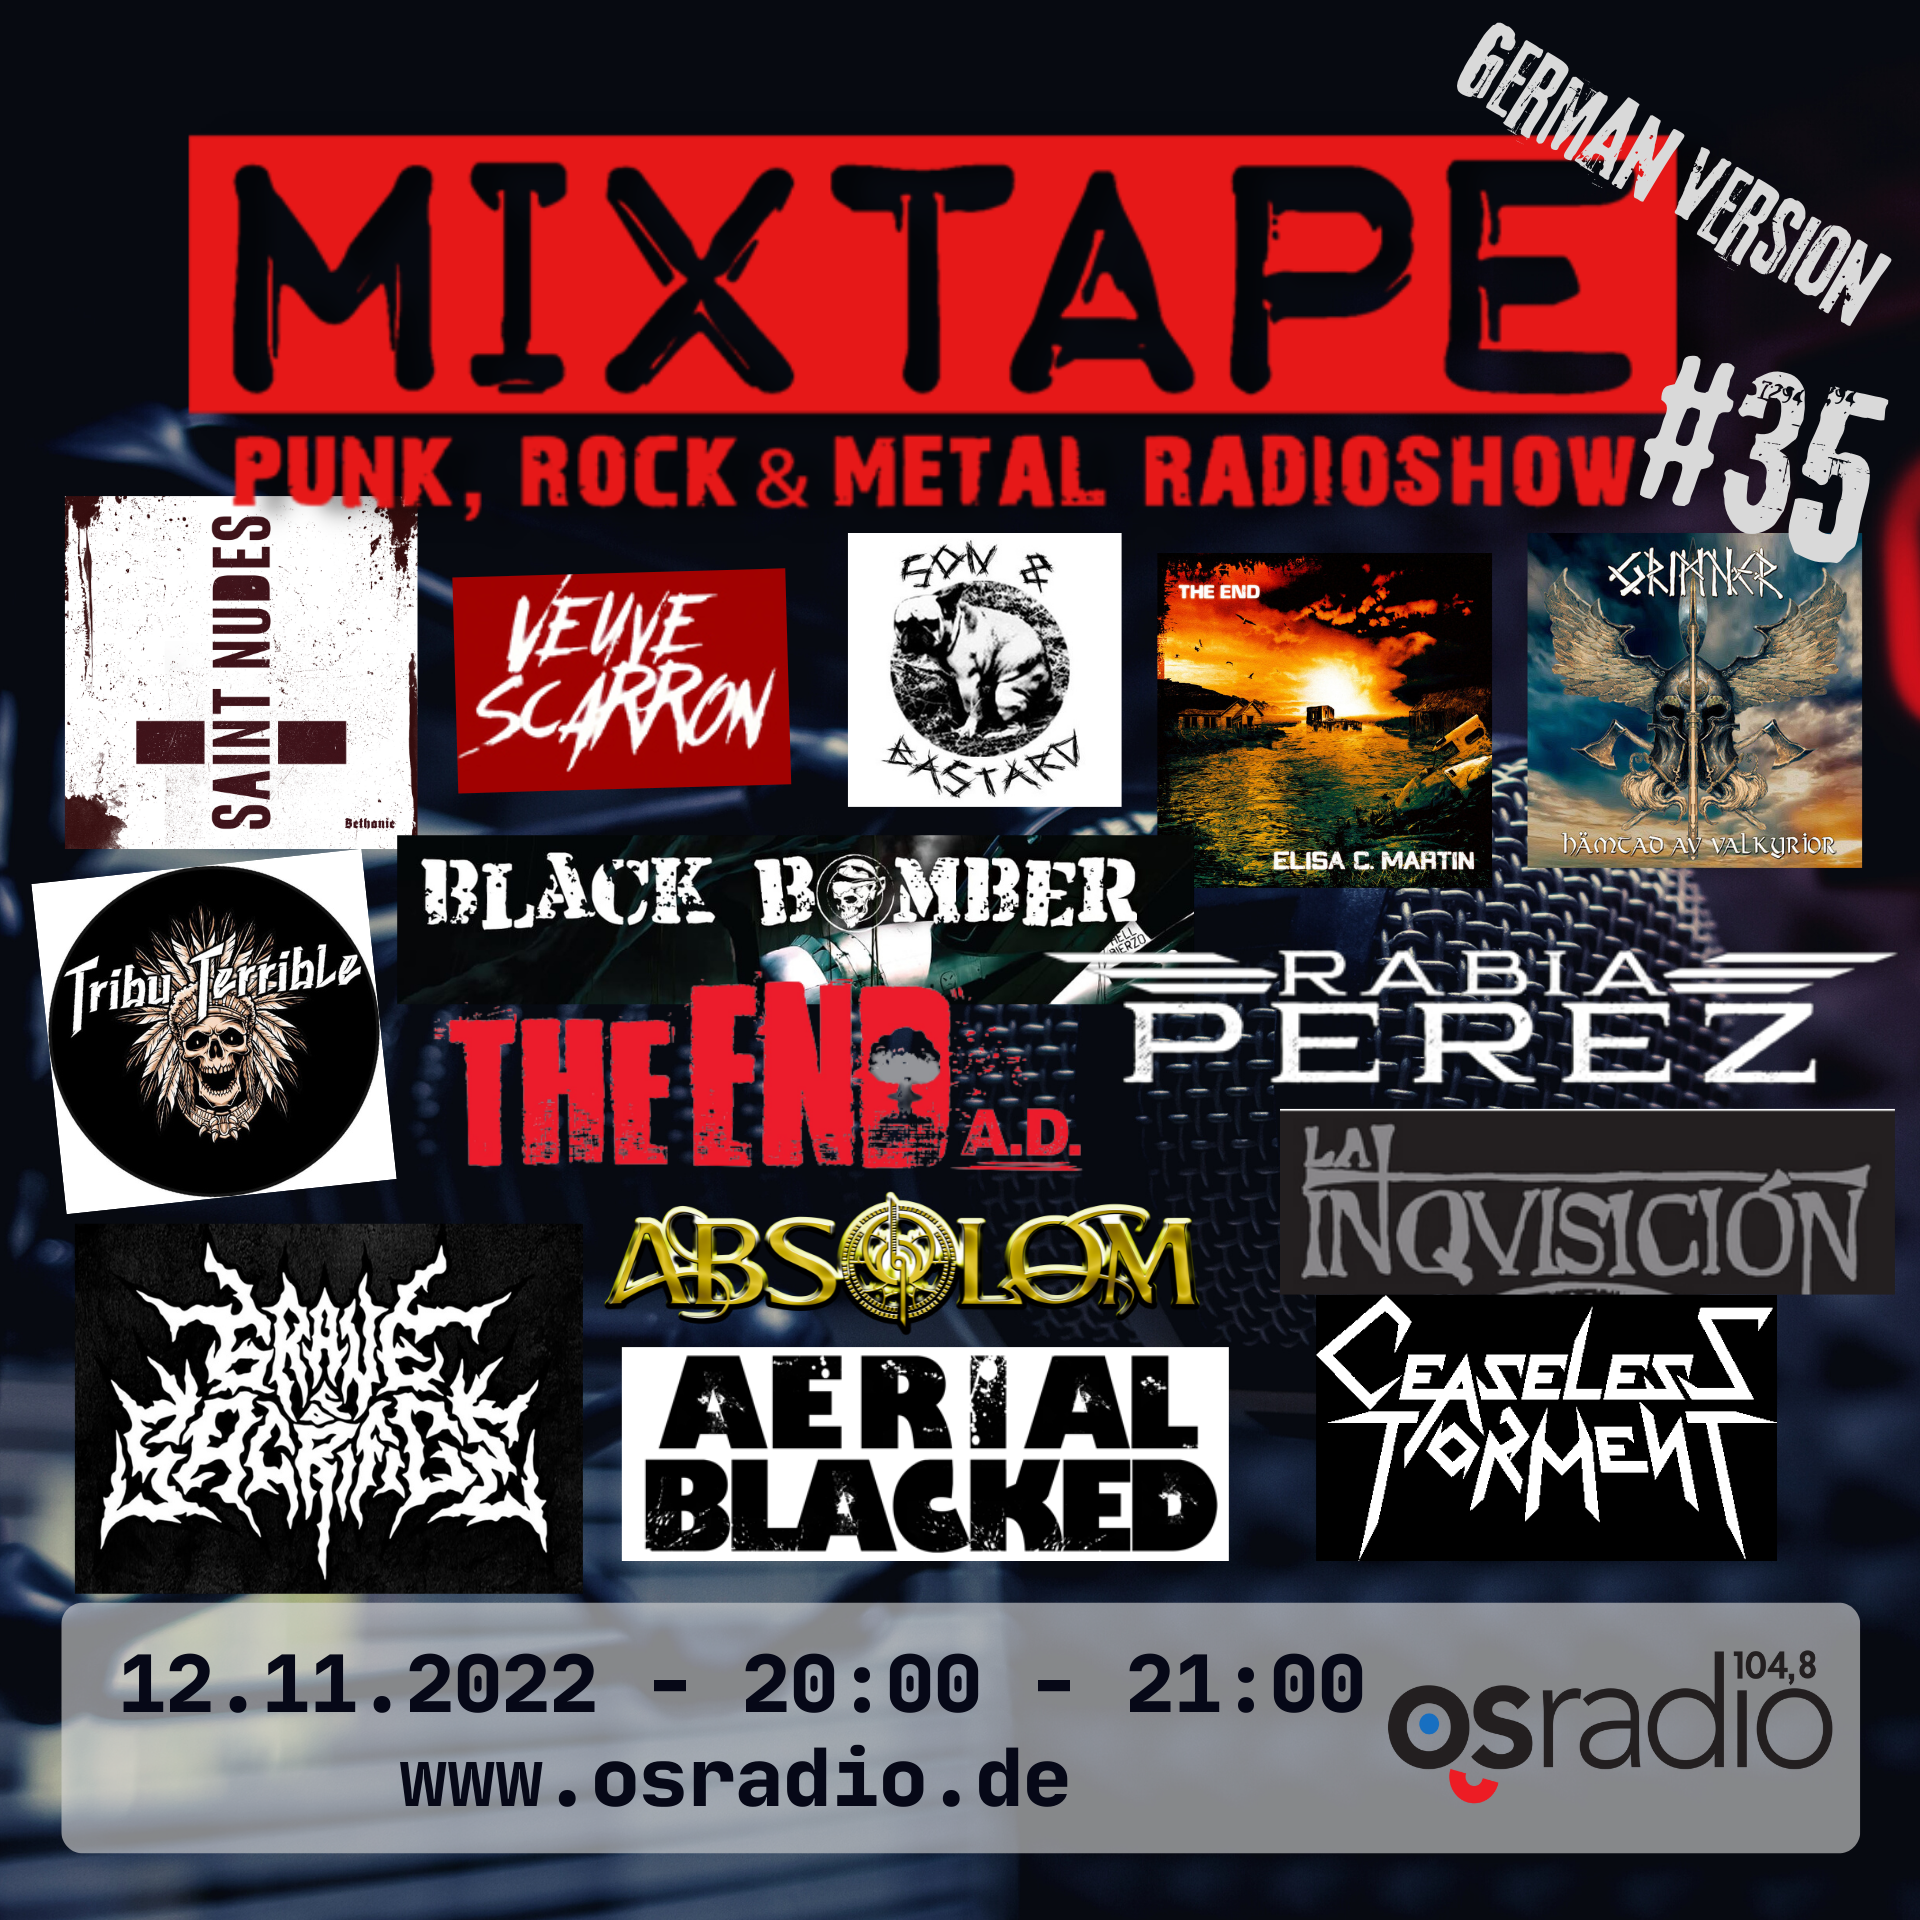 En este momento estás viendo Mixtape German Version #35